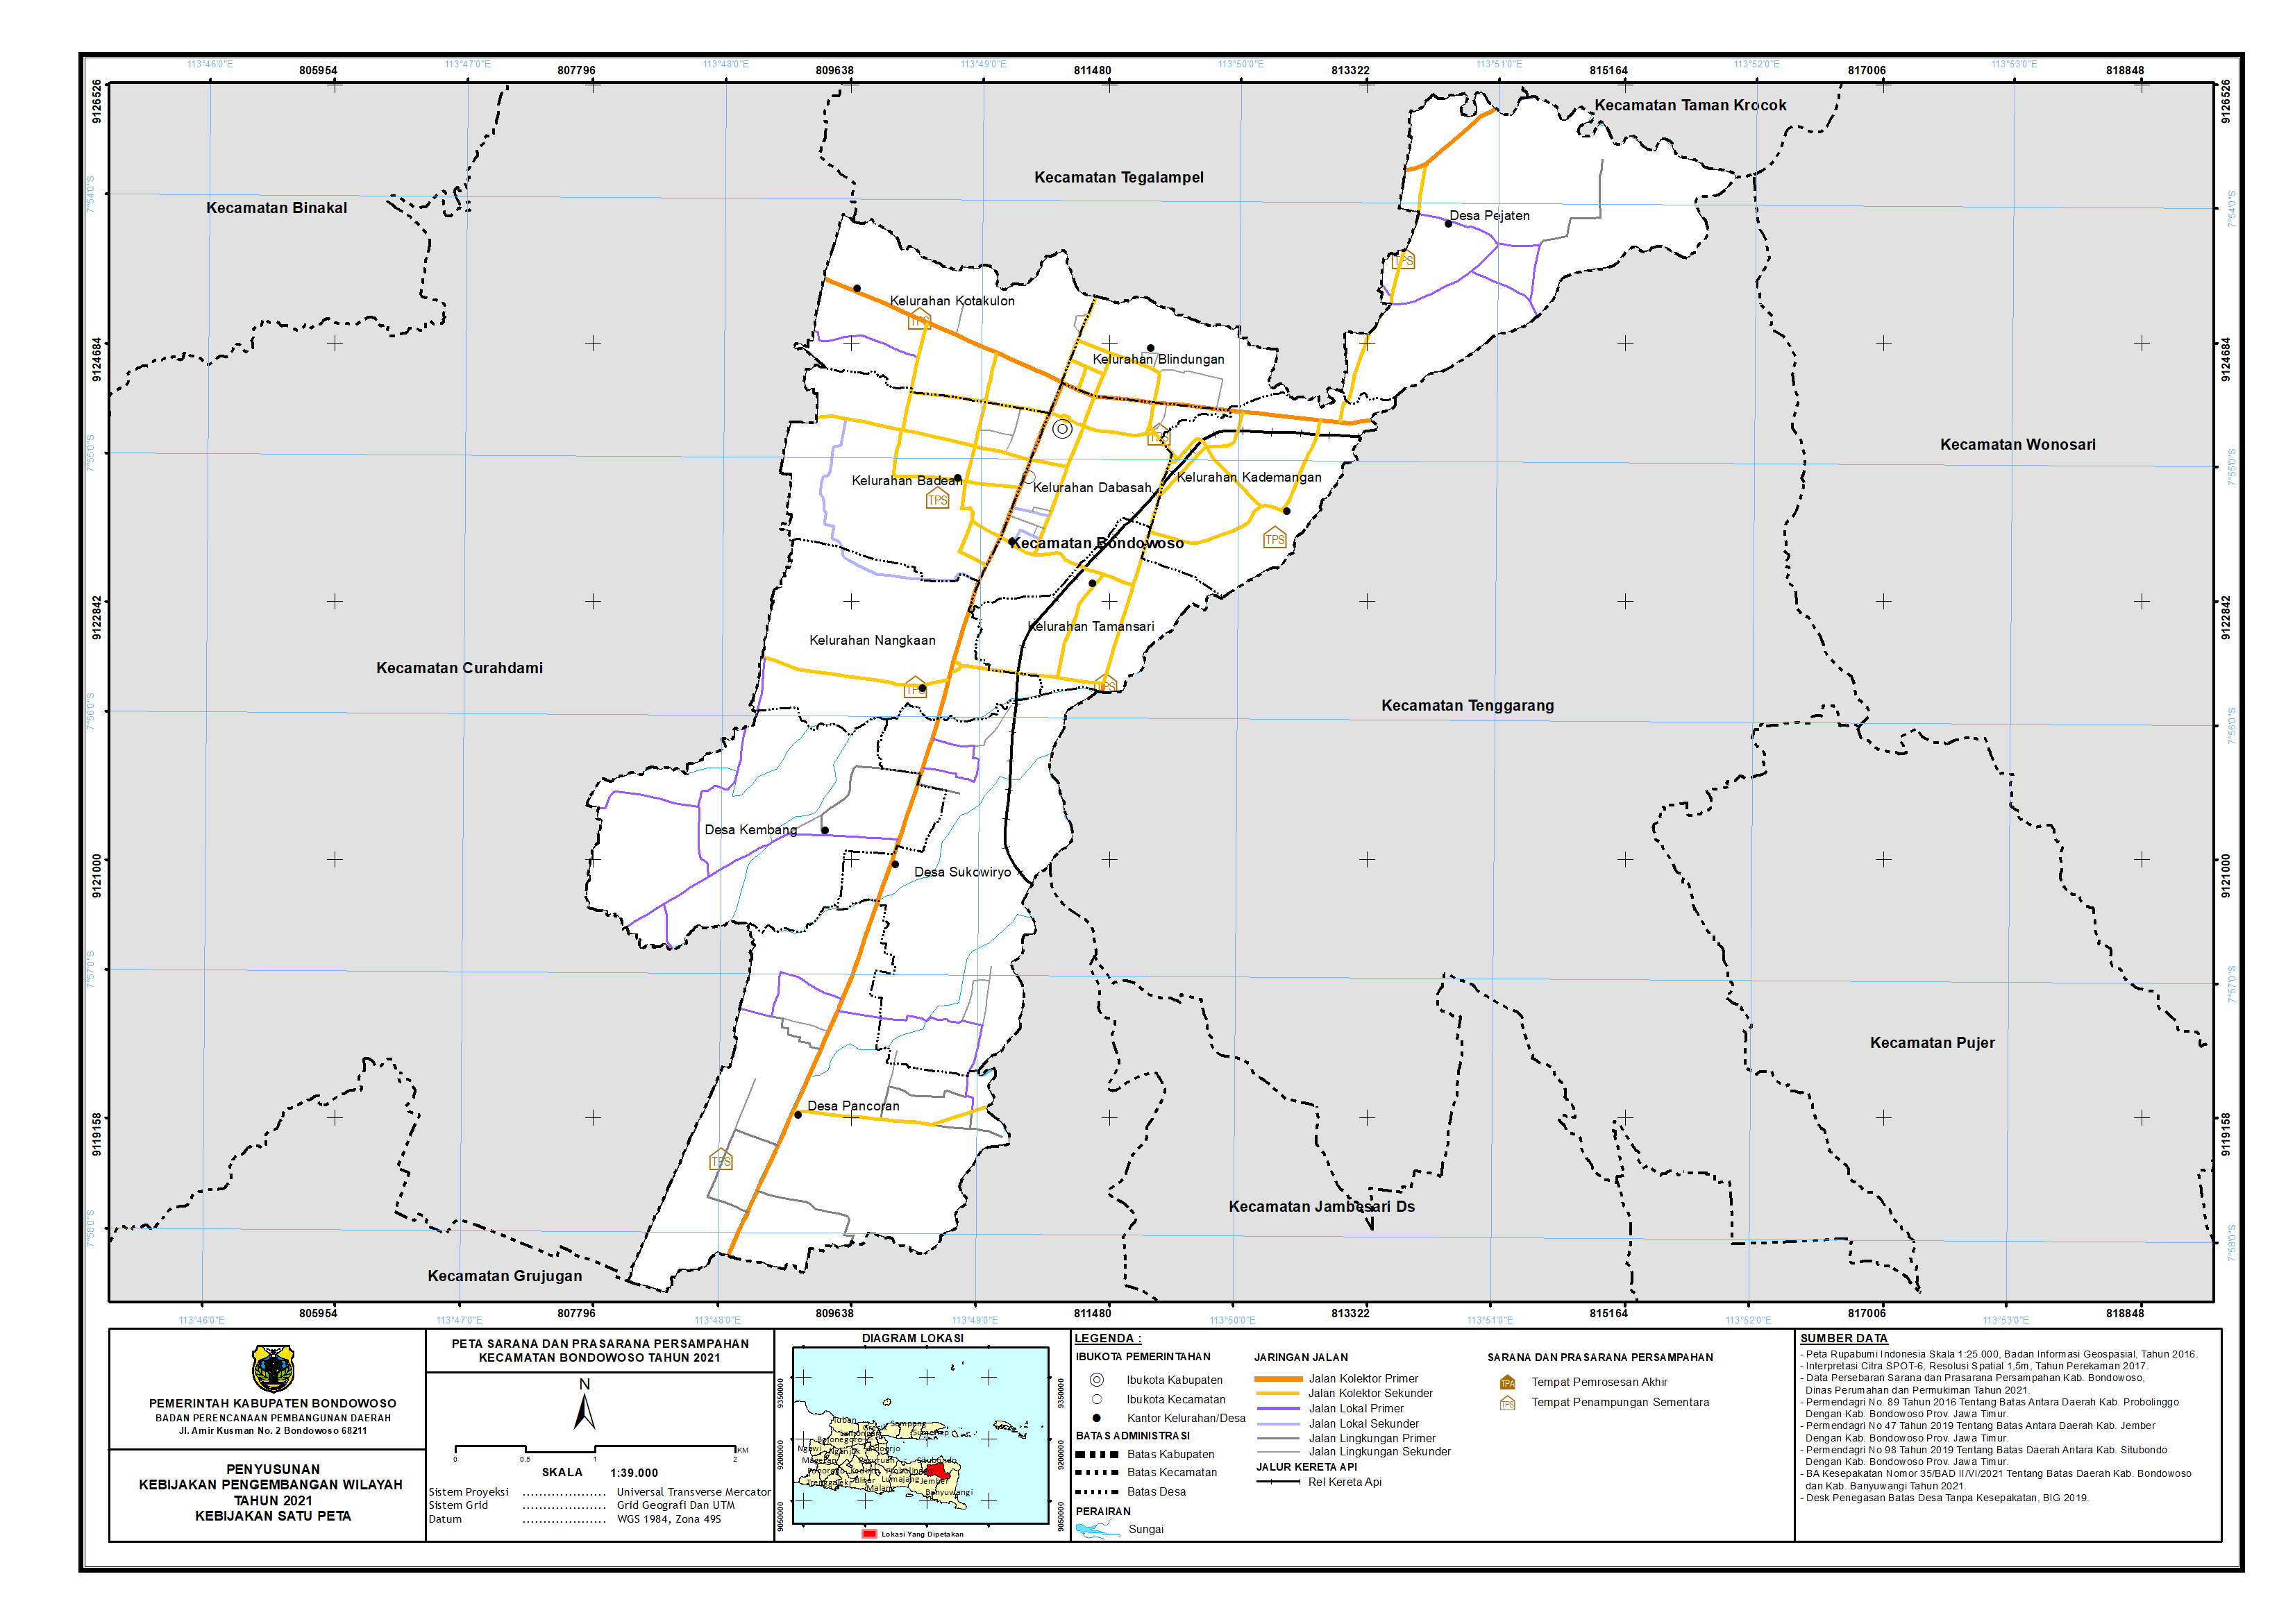 Peta Fasilitas Persampahan Kecamatan Bondowoso.png